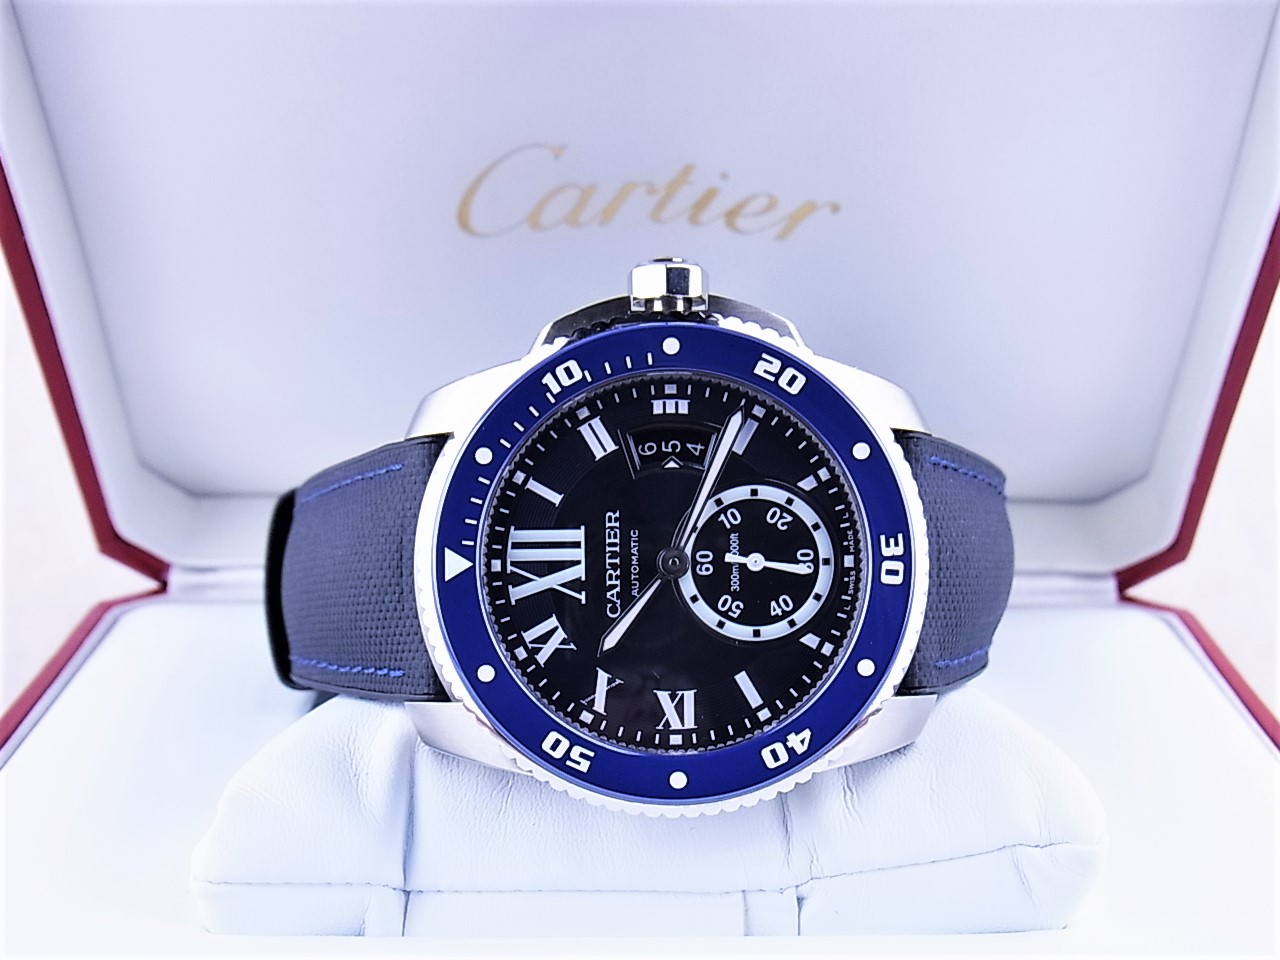 美品CARTIER カルティエ 腕時計カリブルダイバー WSCA0010 ブルー